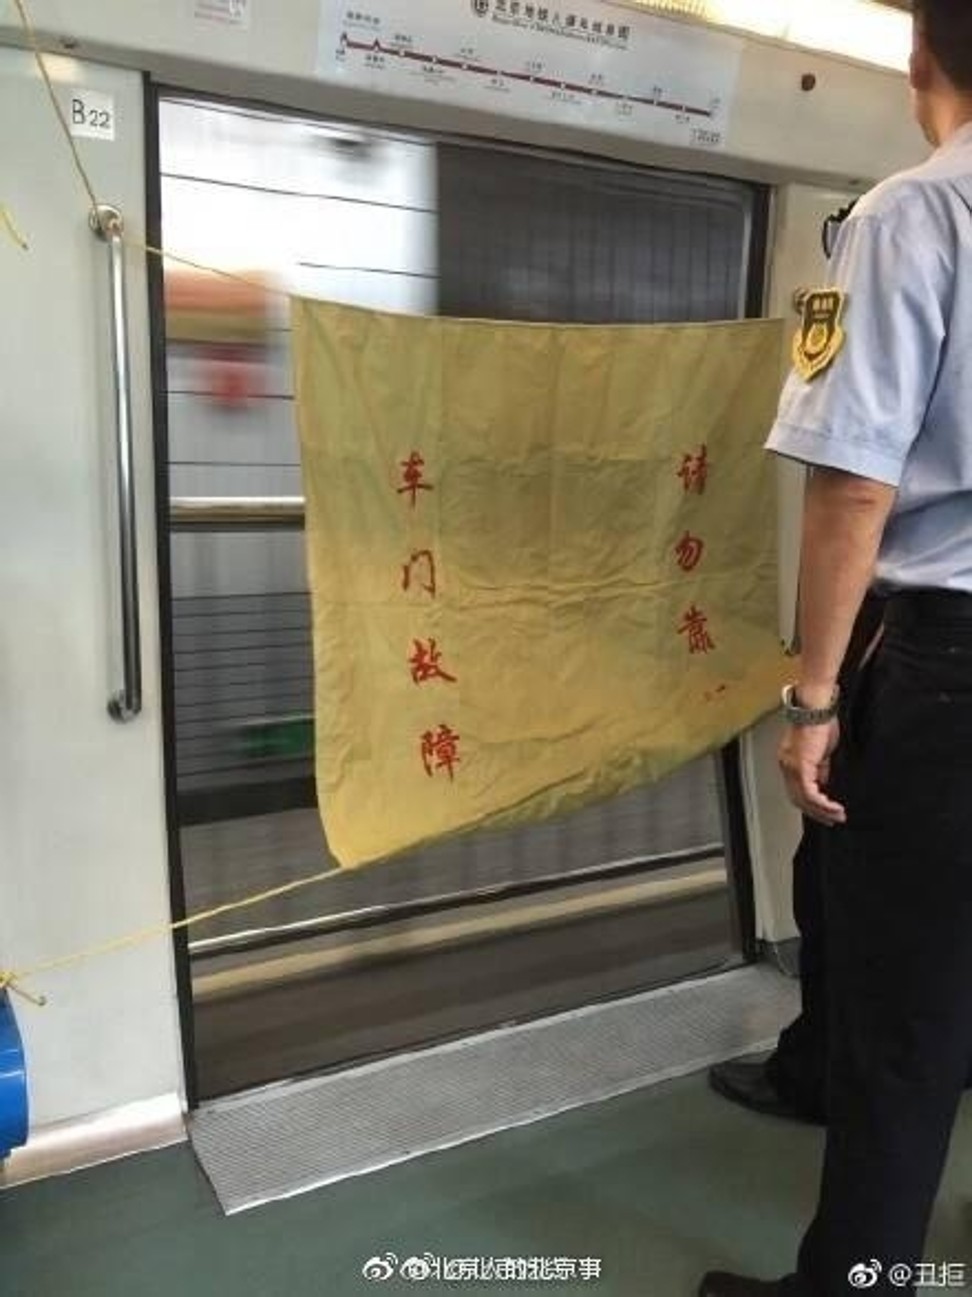 === NO ARCHIVE IMAGE === ATN. BEIJINGMETRO24. Beijing subway continues to run despite malfunctioned open door. UNDATED HANDOUT